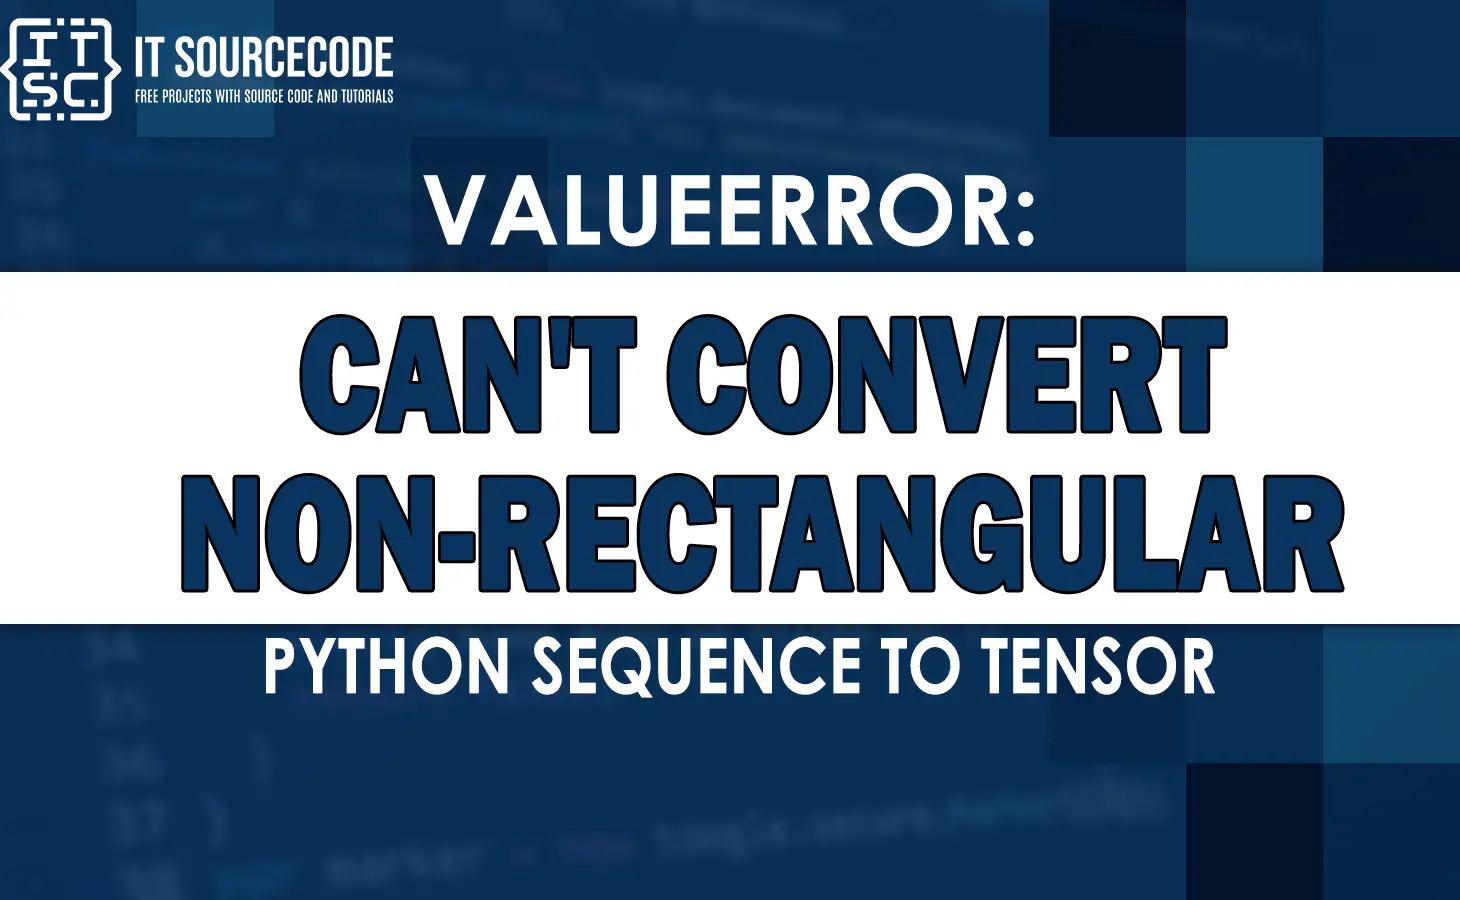 valueerror can't convert non-rectangular python sequence to tensor